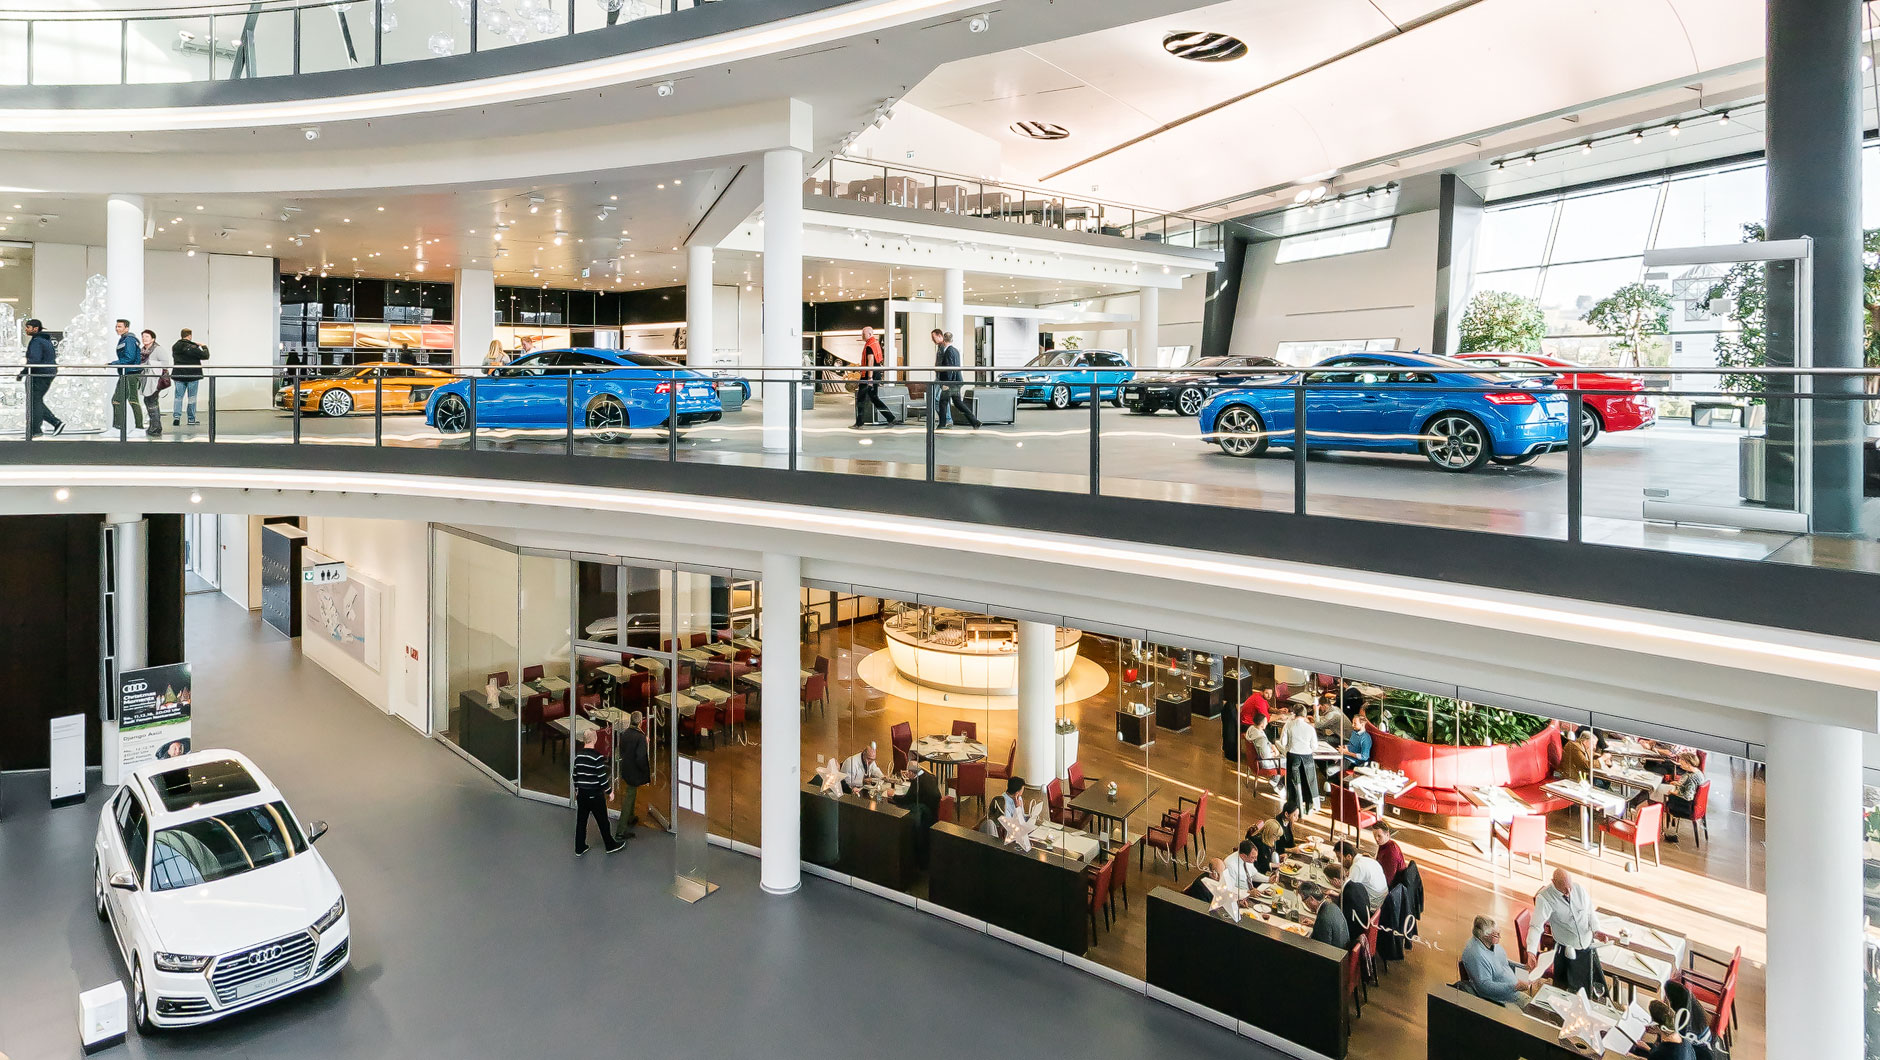 Fahrzeugausstellung im Audi Forum Neckarsulm mit verschiedenen aktuellen Fahrzeugmodellen. Im Erdgeschoss befindet sich das exklusive Restaurant NUVOLARI.